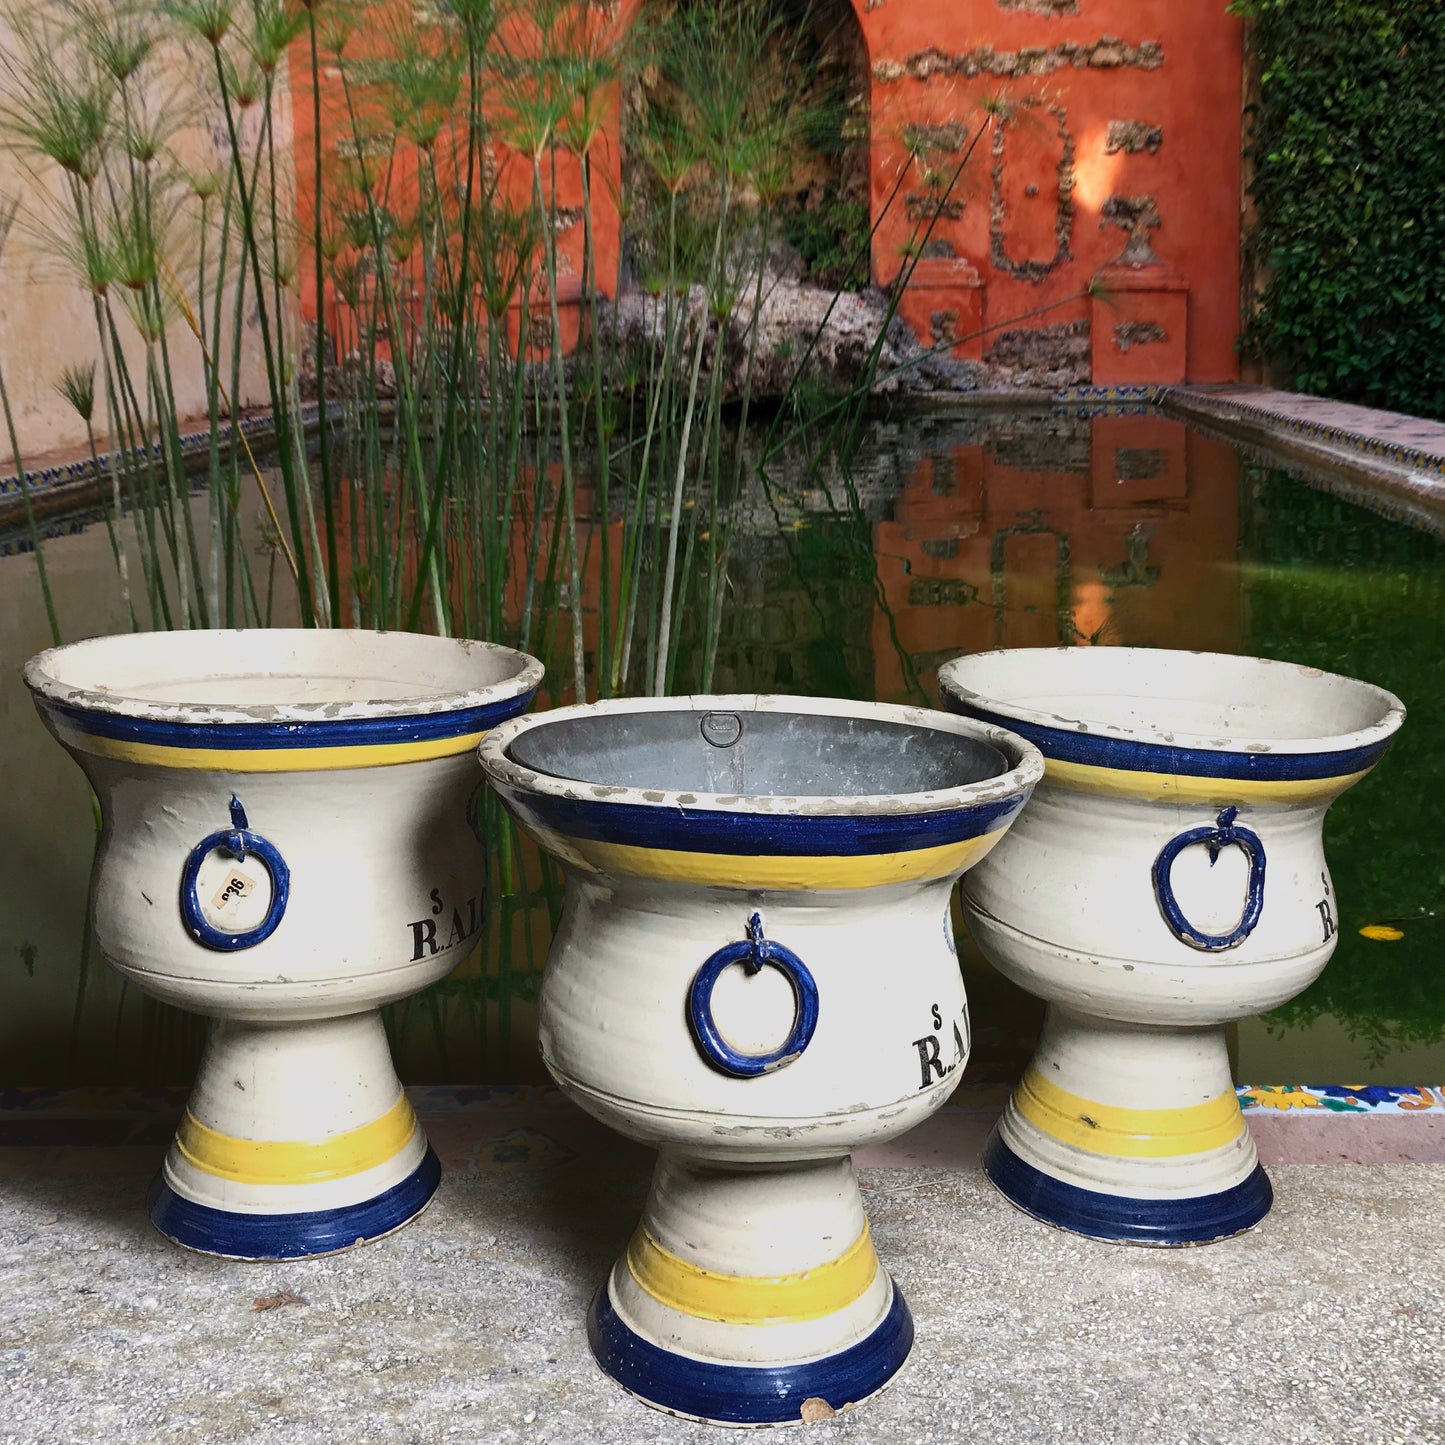 Three 19th Century Faience Spanish Campana Vases from the Real Alcázar de Sevilla (Royal Alcázar Palace of Seville)